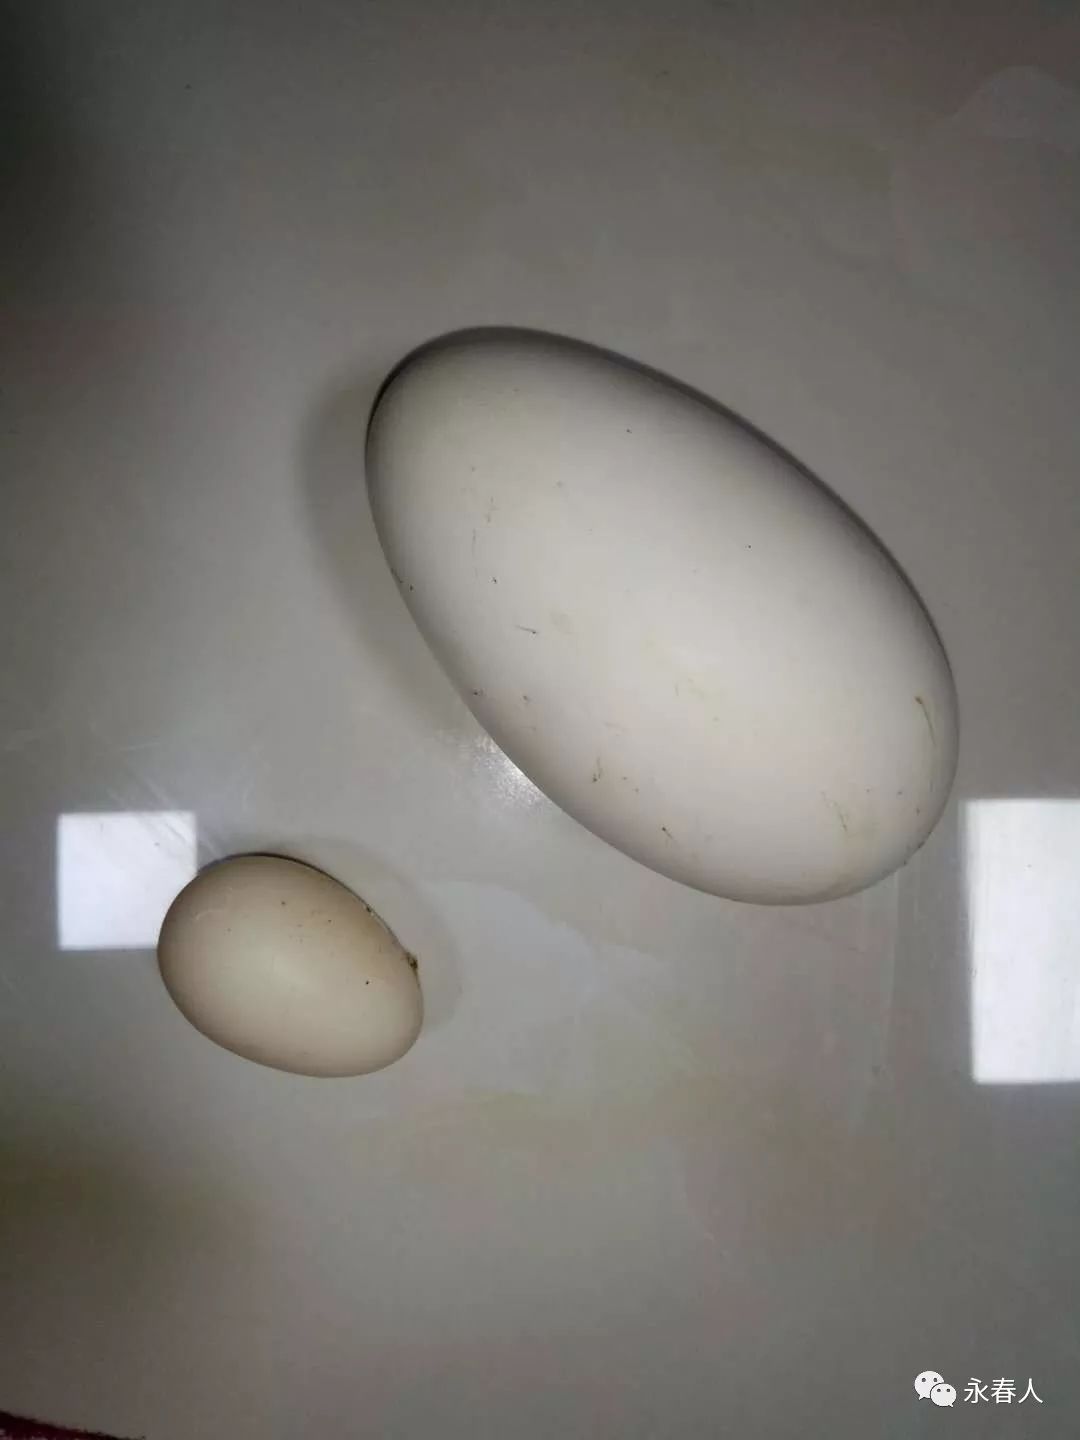 【趣闻】永春石鼓镇黄女士家鸭子生出超大蛋 一个顶好几个大